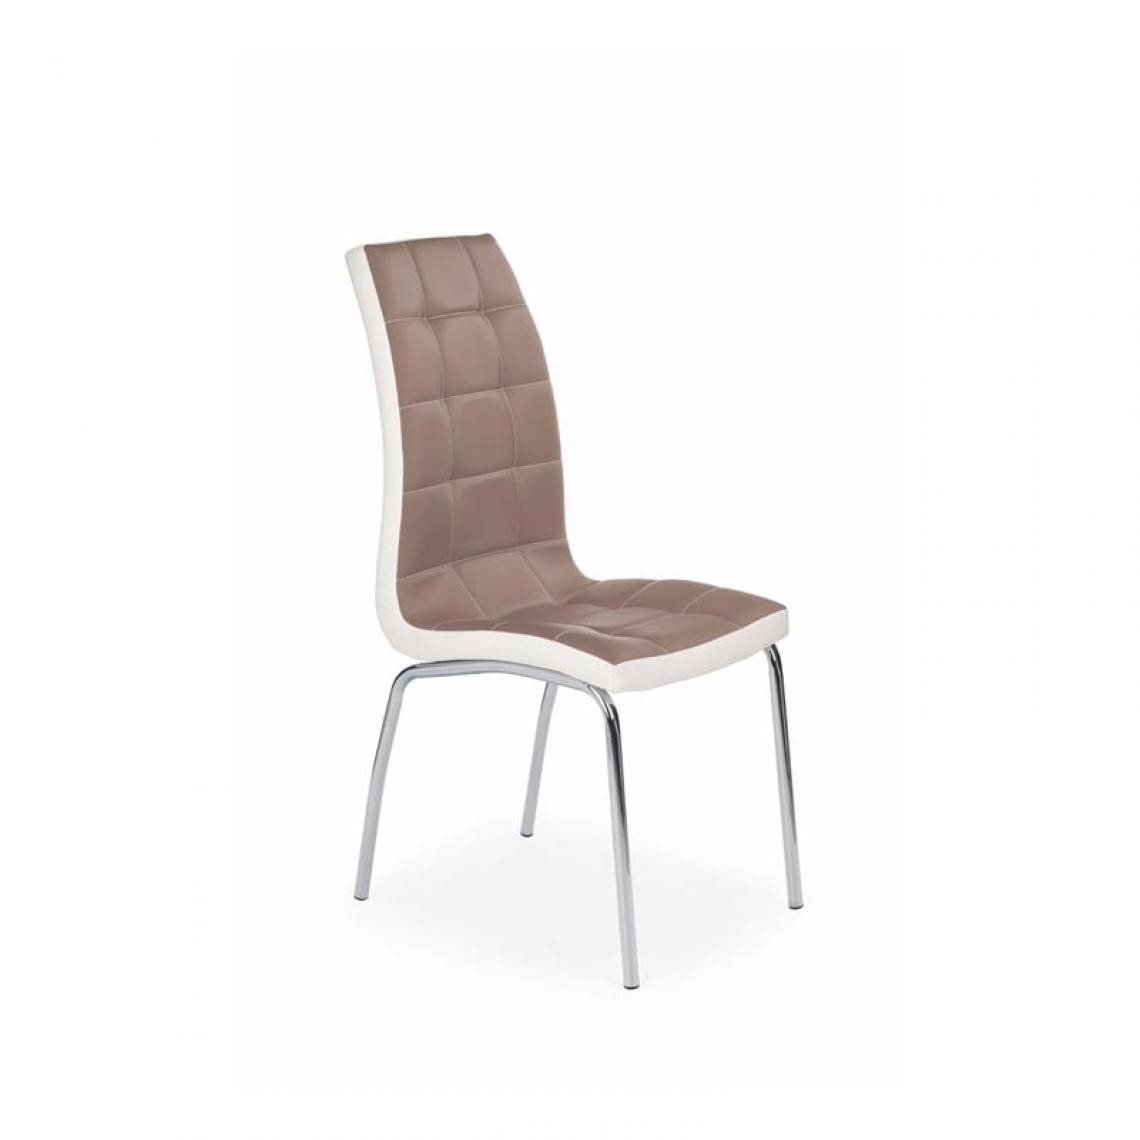 Carellia - Lot de 4 chaises en cuir synthétique 42 cm x 63 cm x 100 cm - Cappuccino/Blanc - Chaises